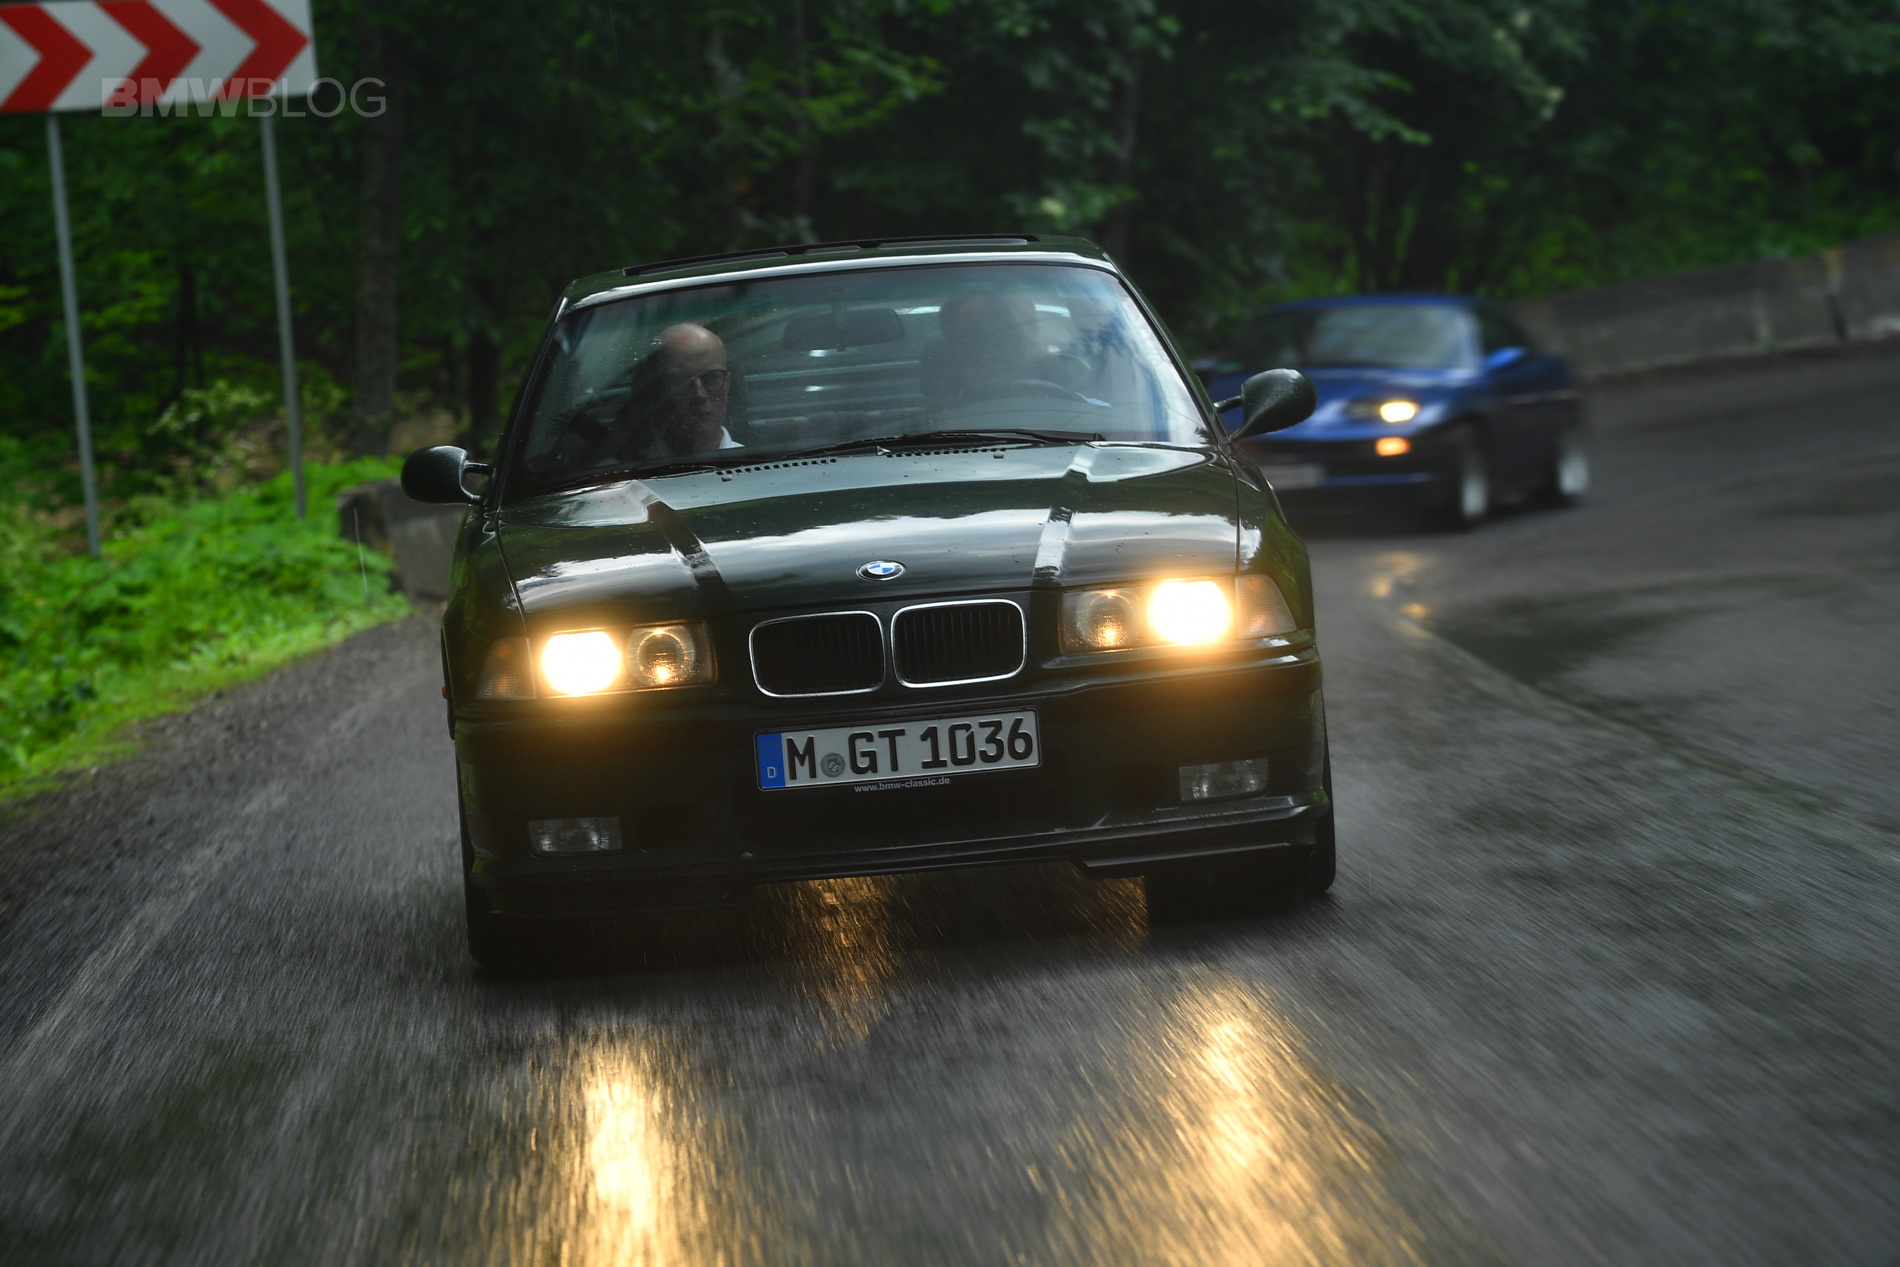 BMW E36 M3 GT 13